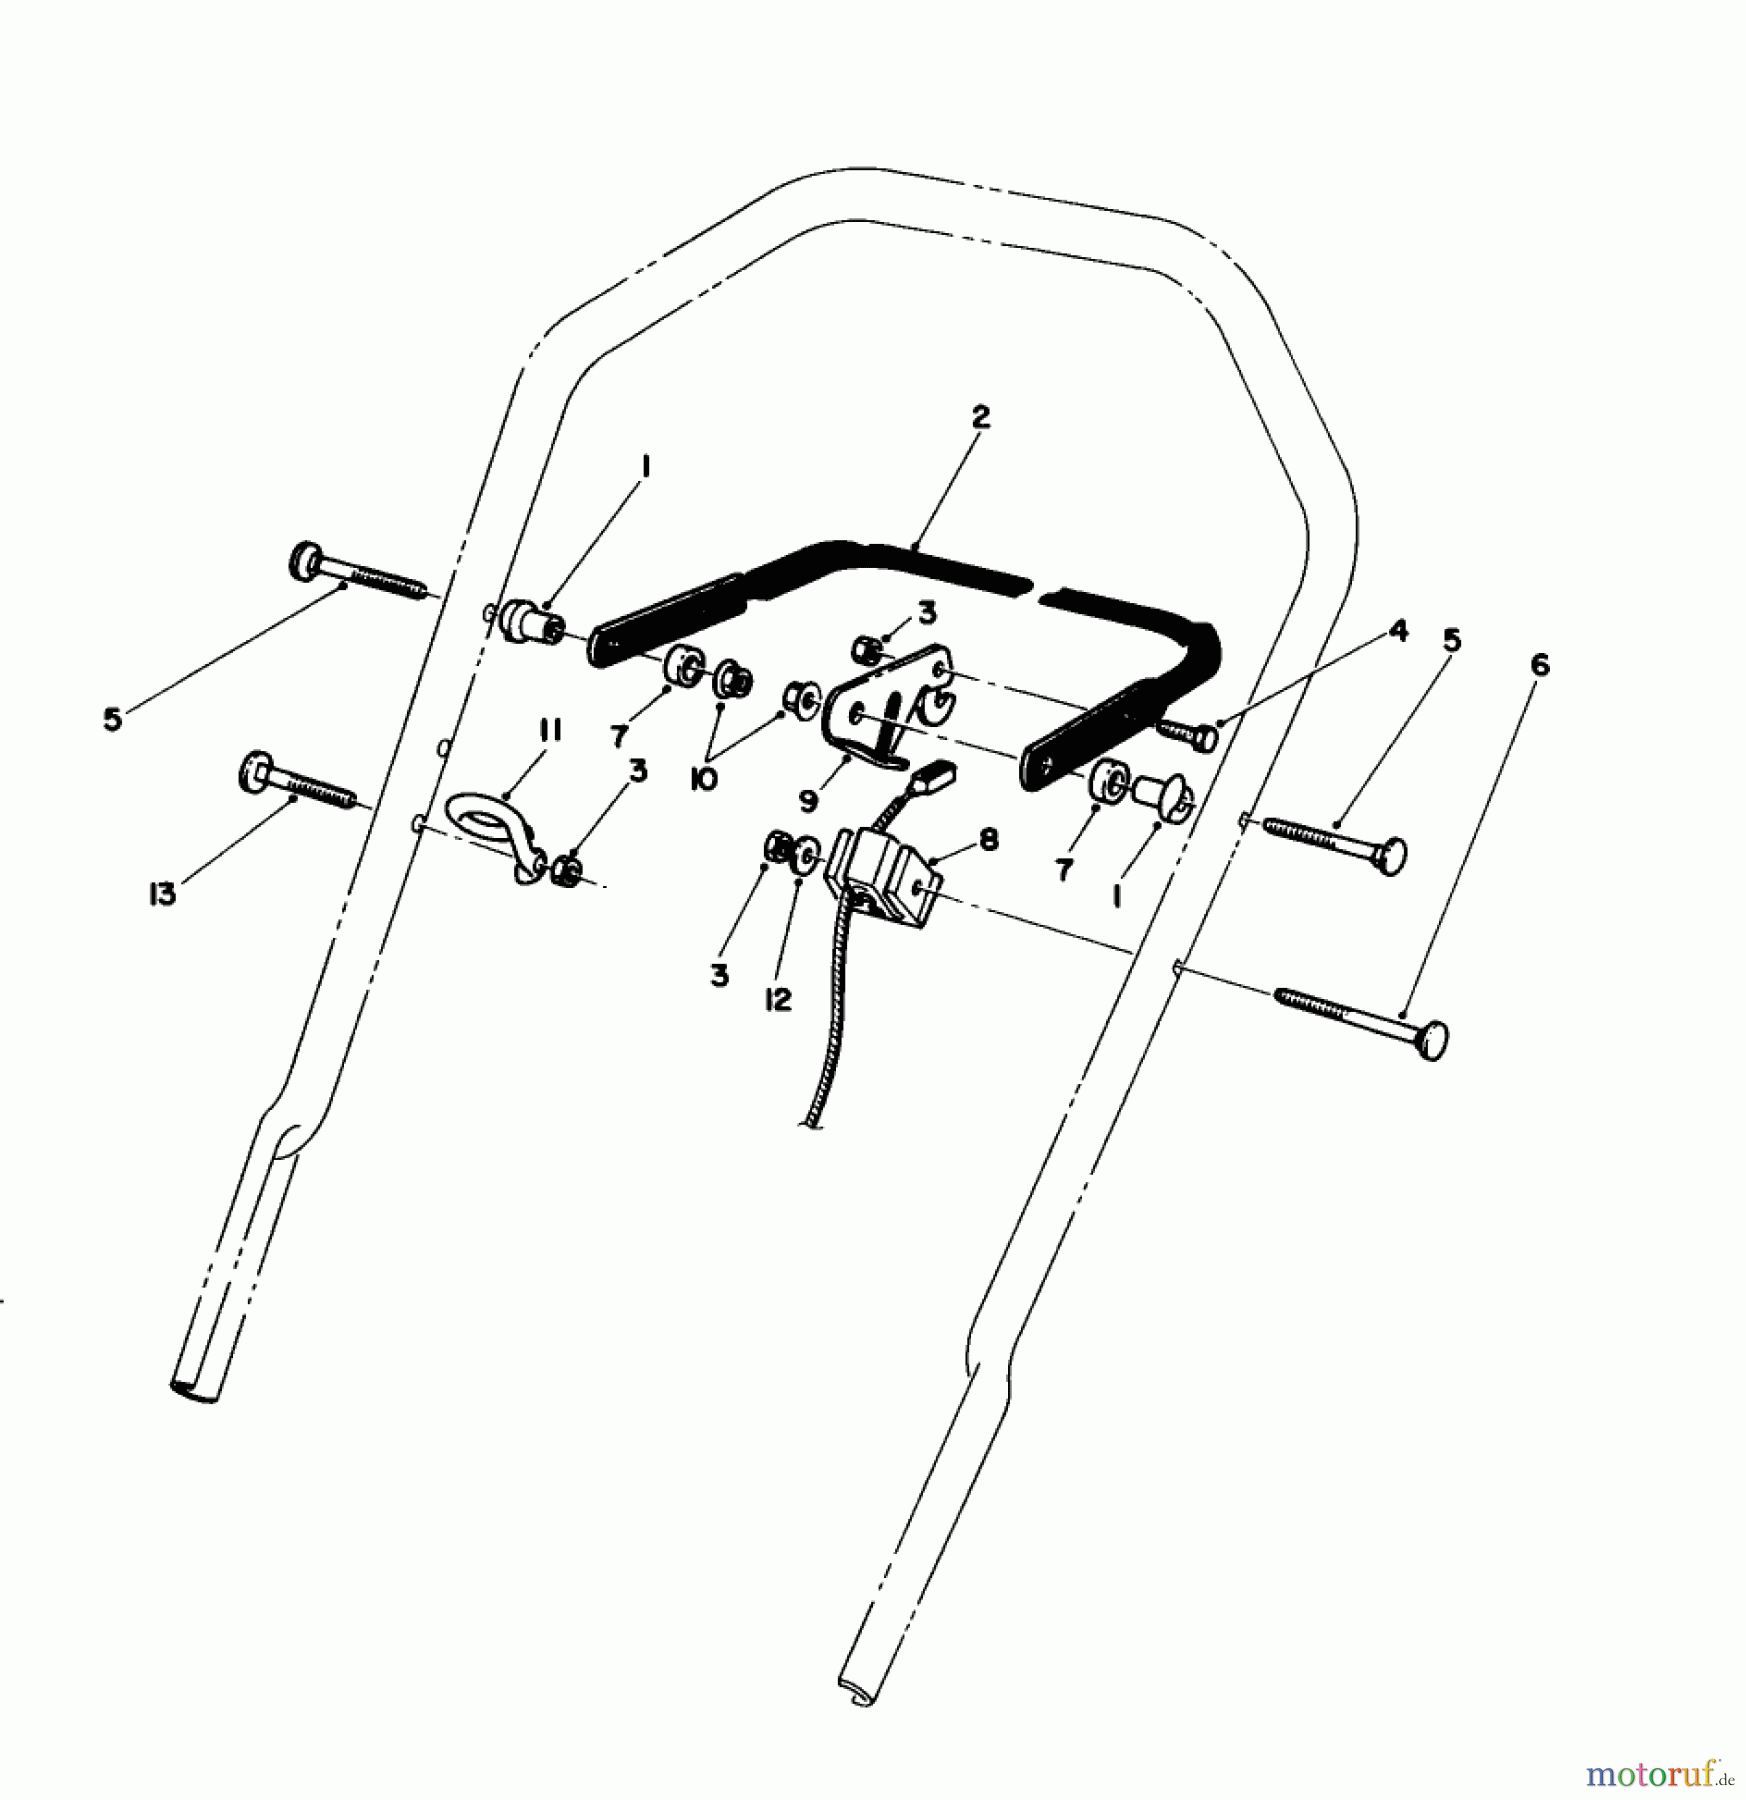  Toro Neu Mowers, Walk-Behind Seite 1 16585C - Toro Lawnmower, 1988 (8000001-8999999) CONTROL ASSEMBLY